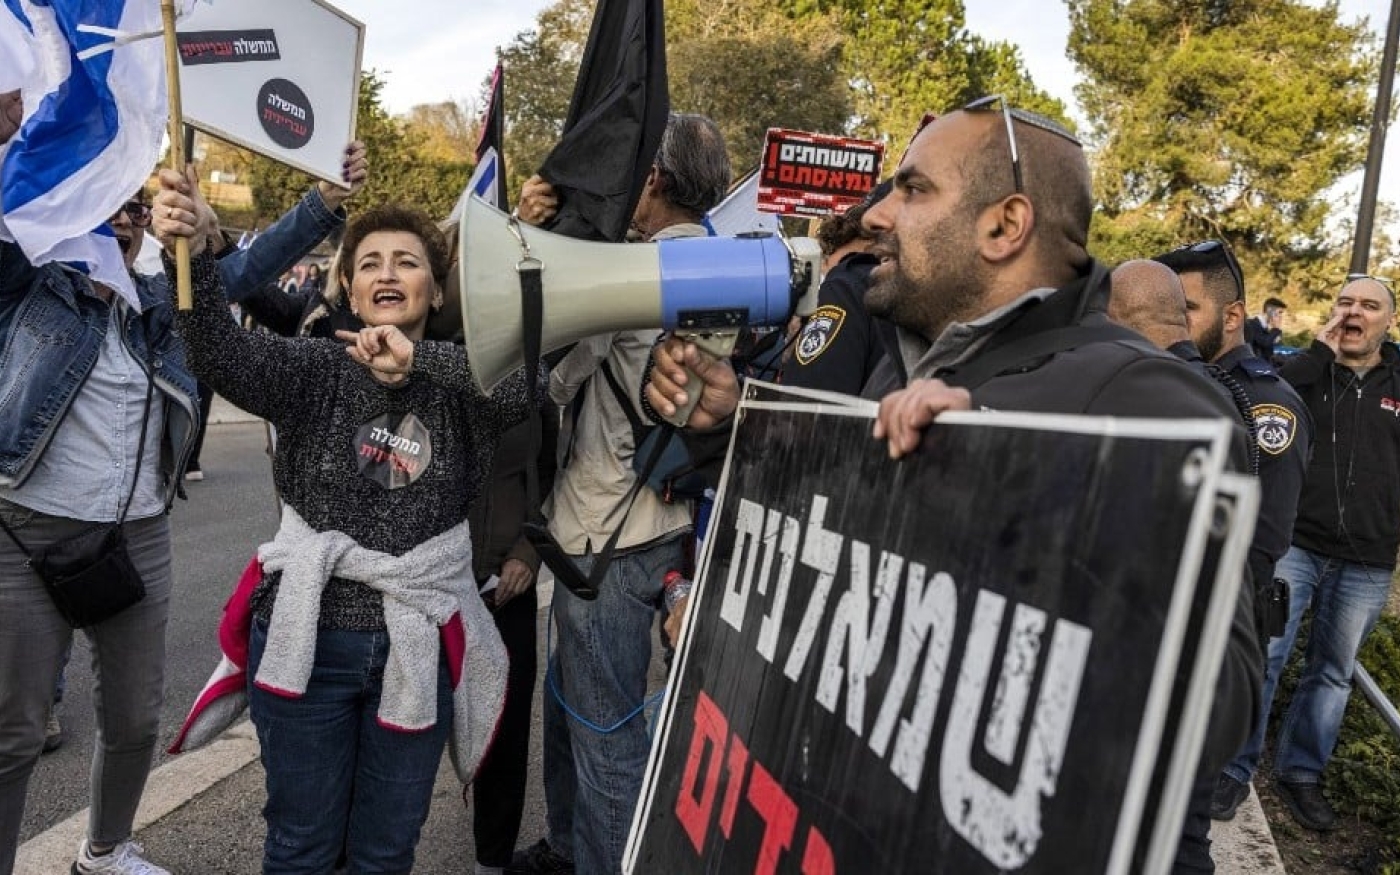 Un militant de droite tient une pancarte indiquant « Gauchistes, traîtres » lors d’une manifestation d’activistes de gauche à Jérusalem, le 12 décembre 2022 (AFP)